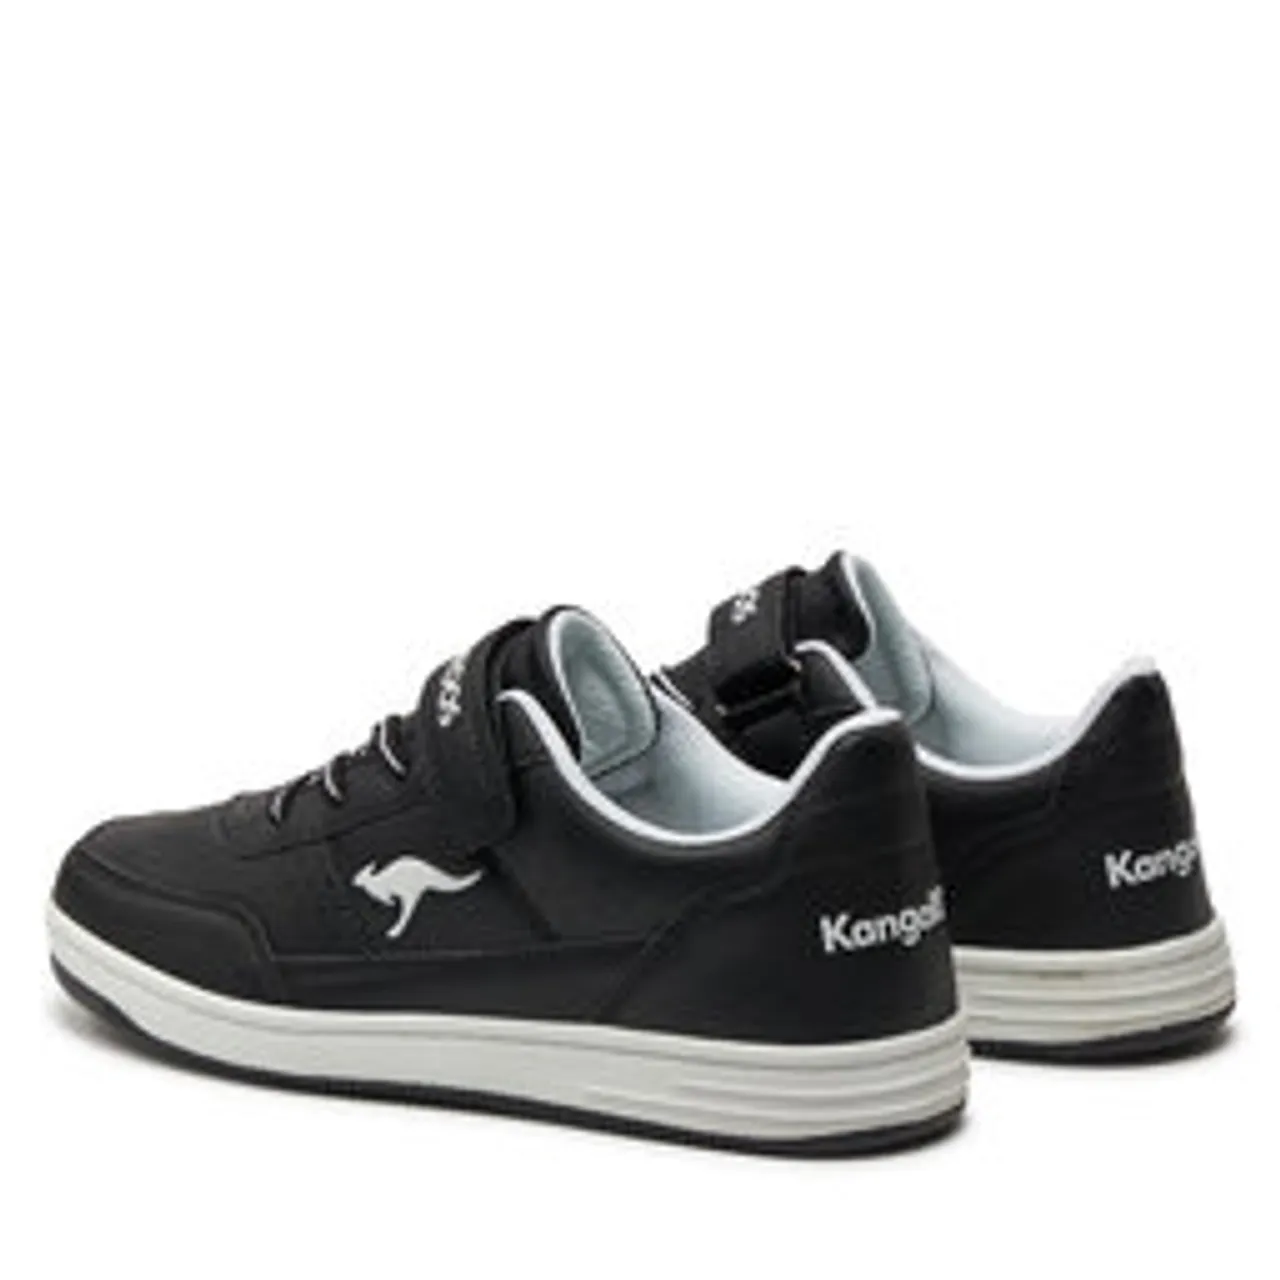 Sneakers KangaRoos K-Cp Gate Ev 18906 5012 S Jet Black/White